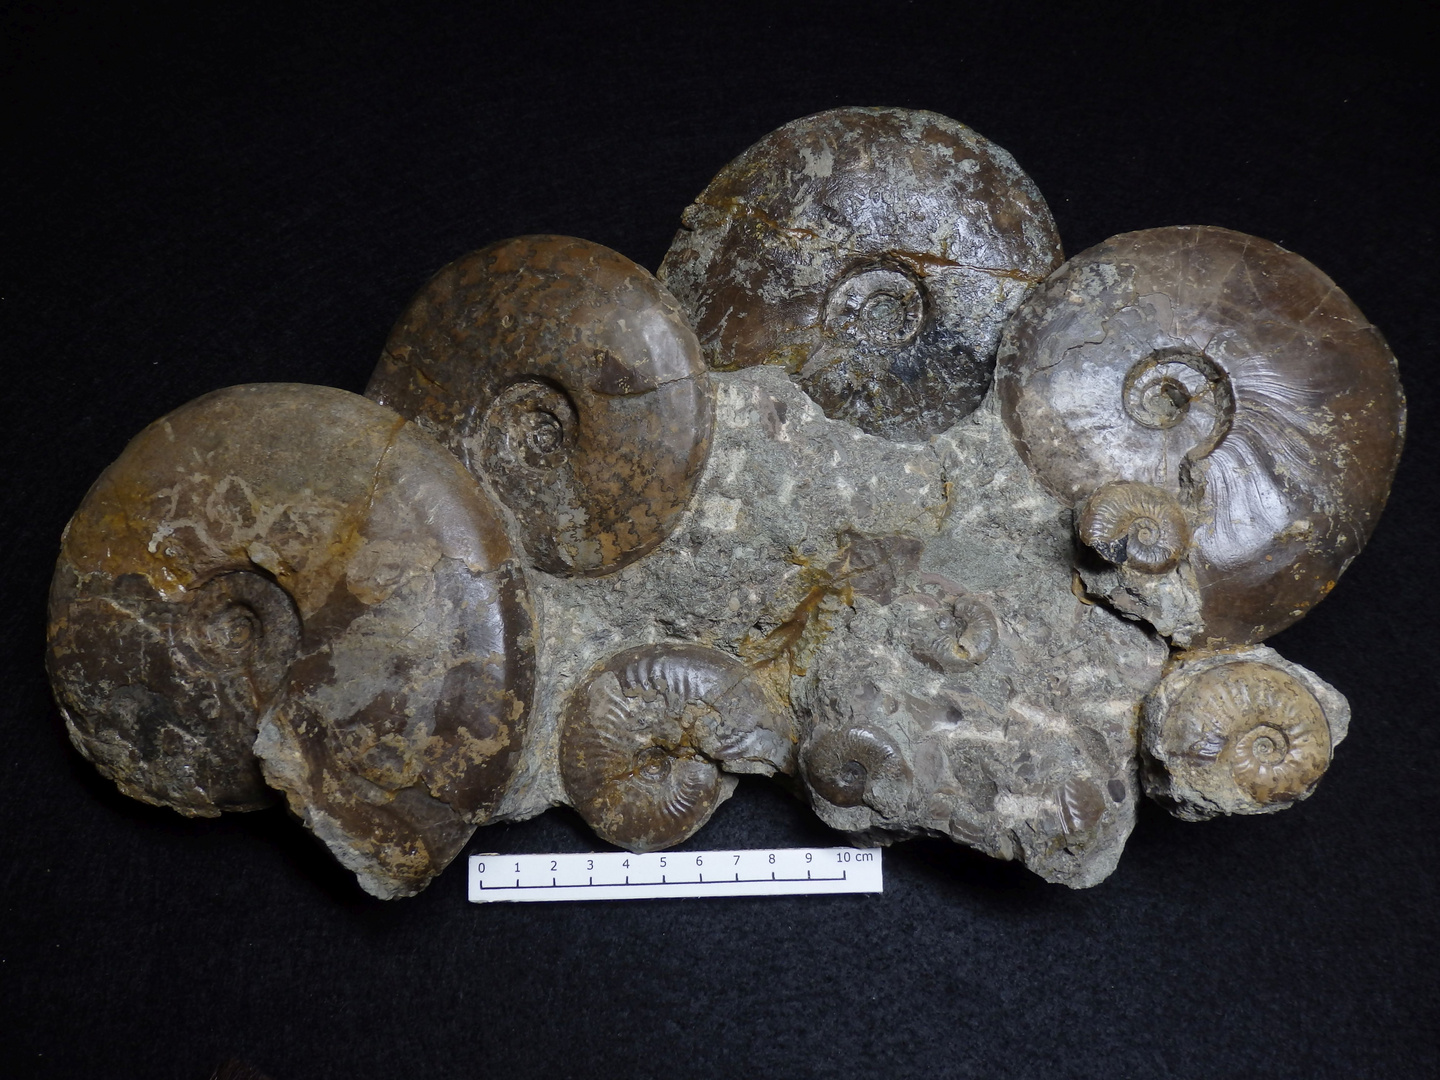 Ammoniten aus der Jurazeit - Staufenia opalinoides